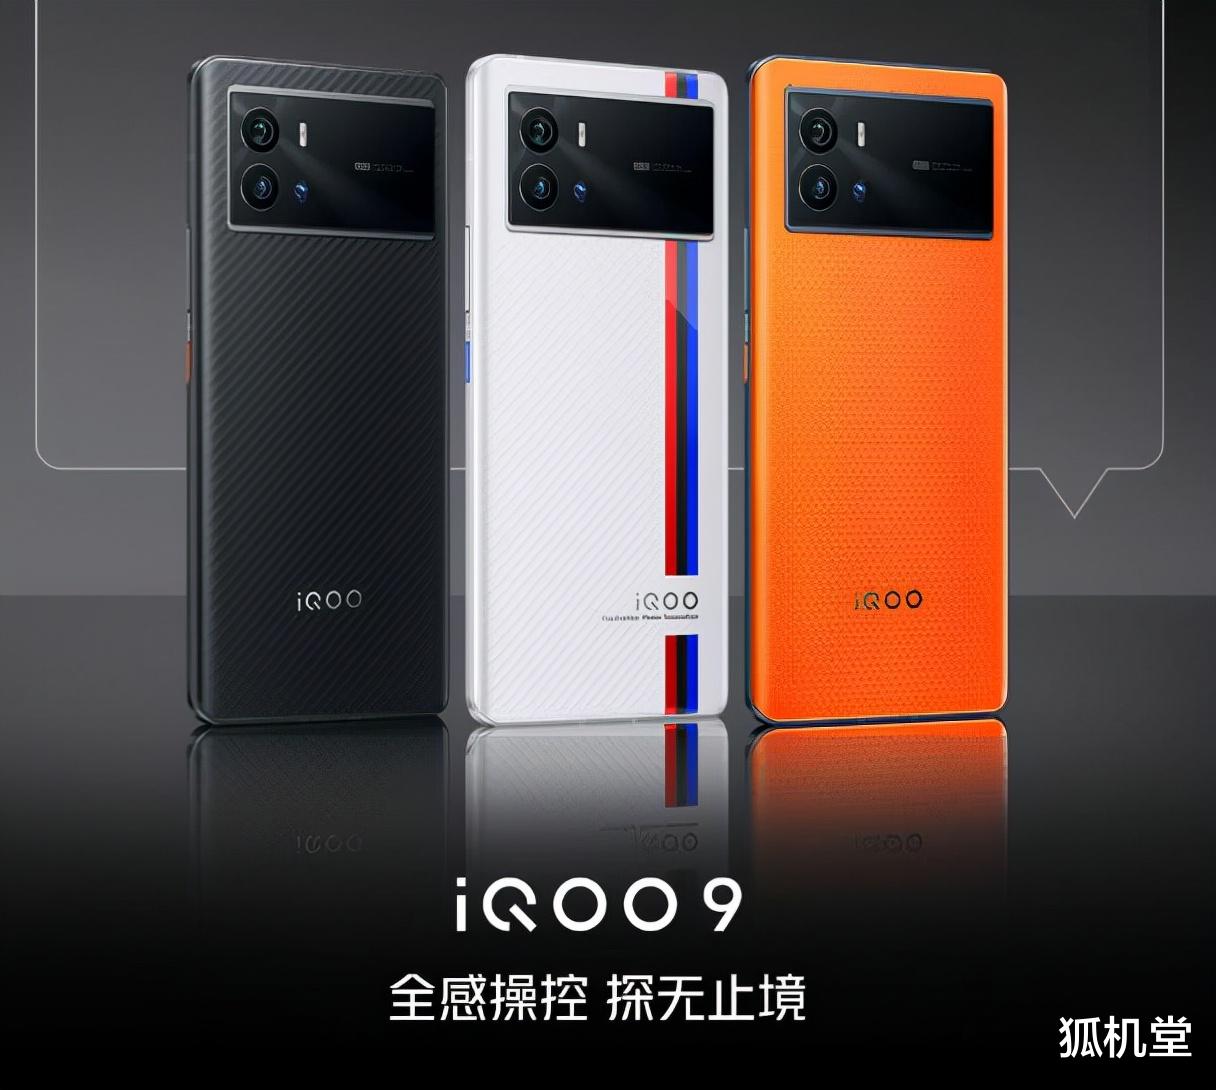 新年换手机，首选旗舰可以看看iQOO9系列准没错